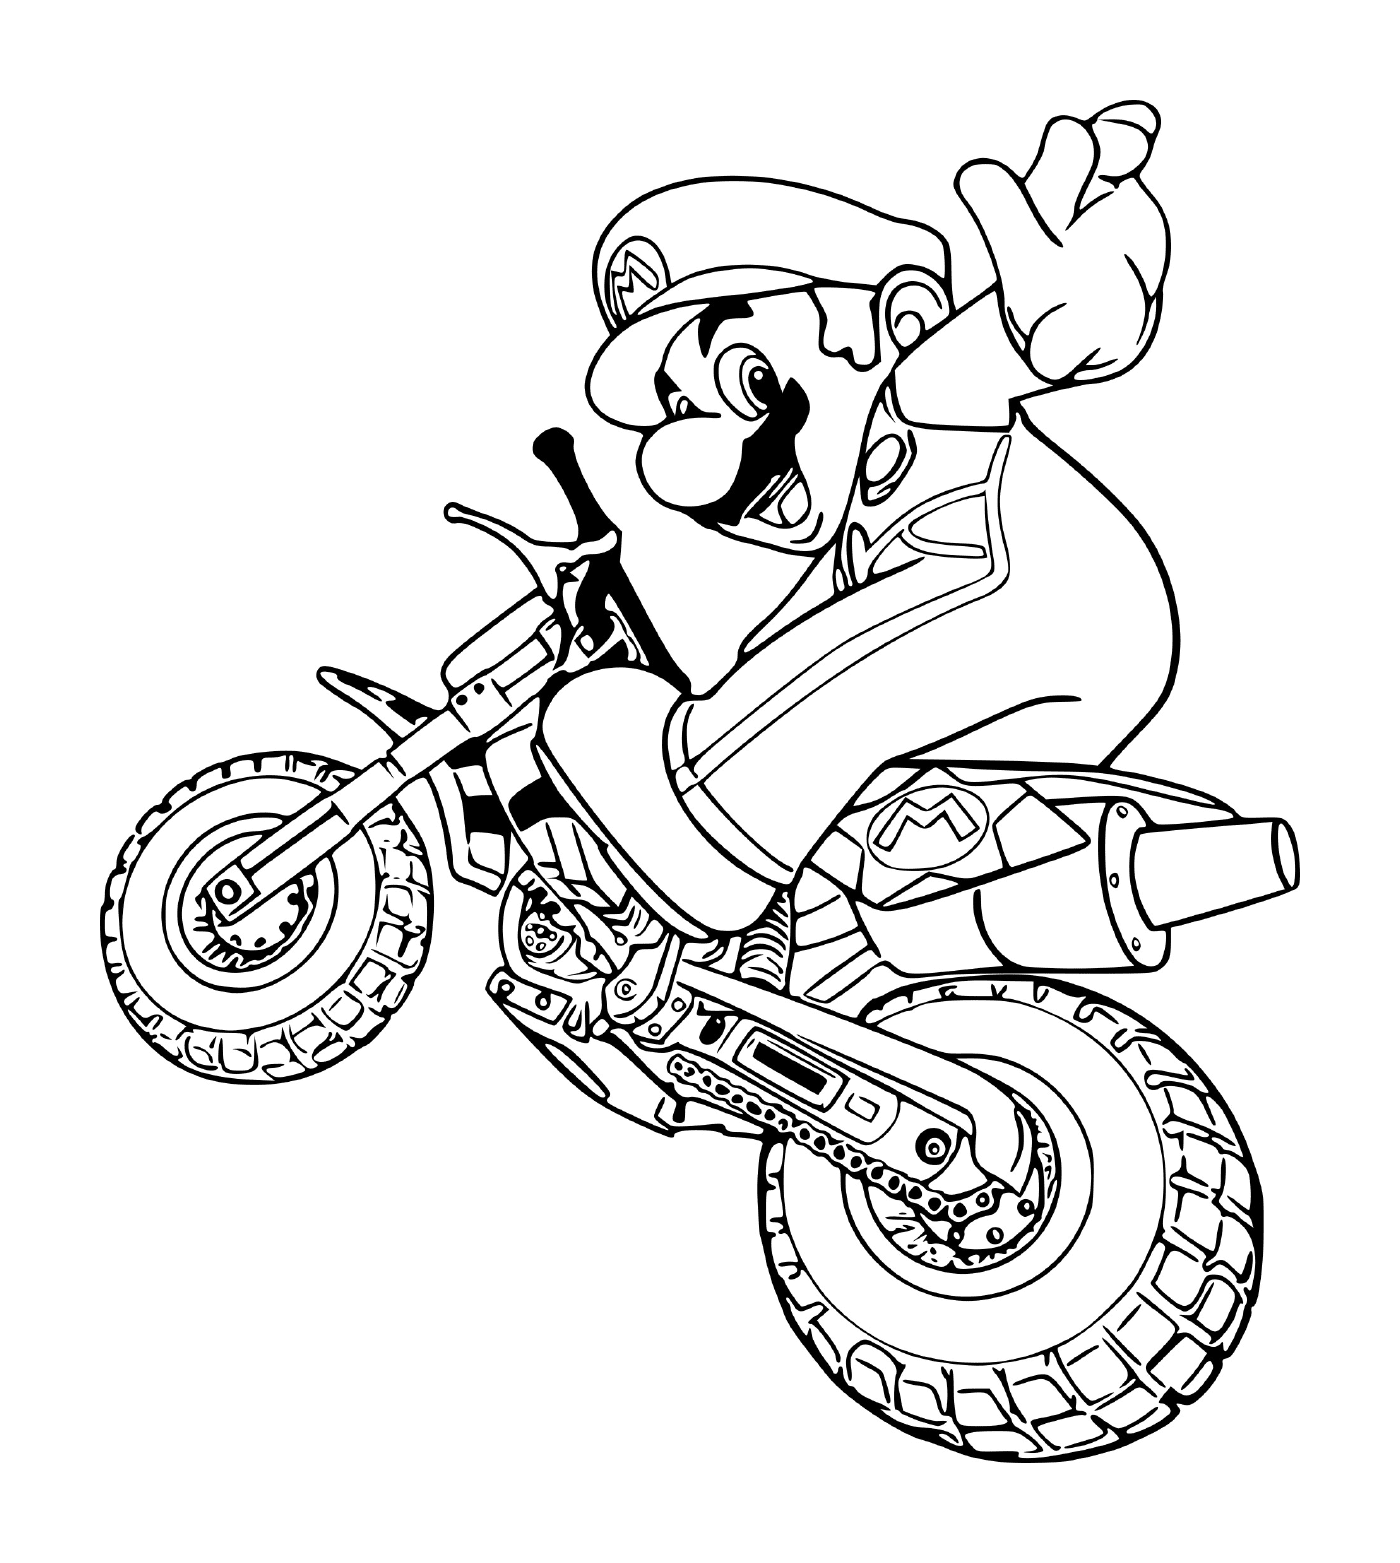  Mario in modalità moto, su una moto 